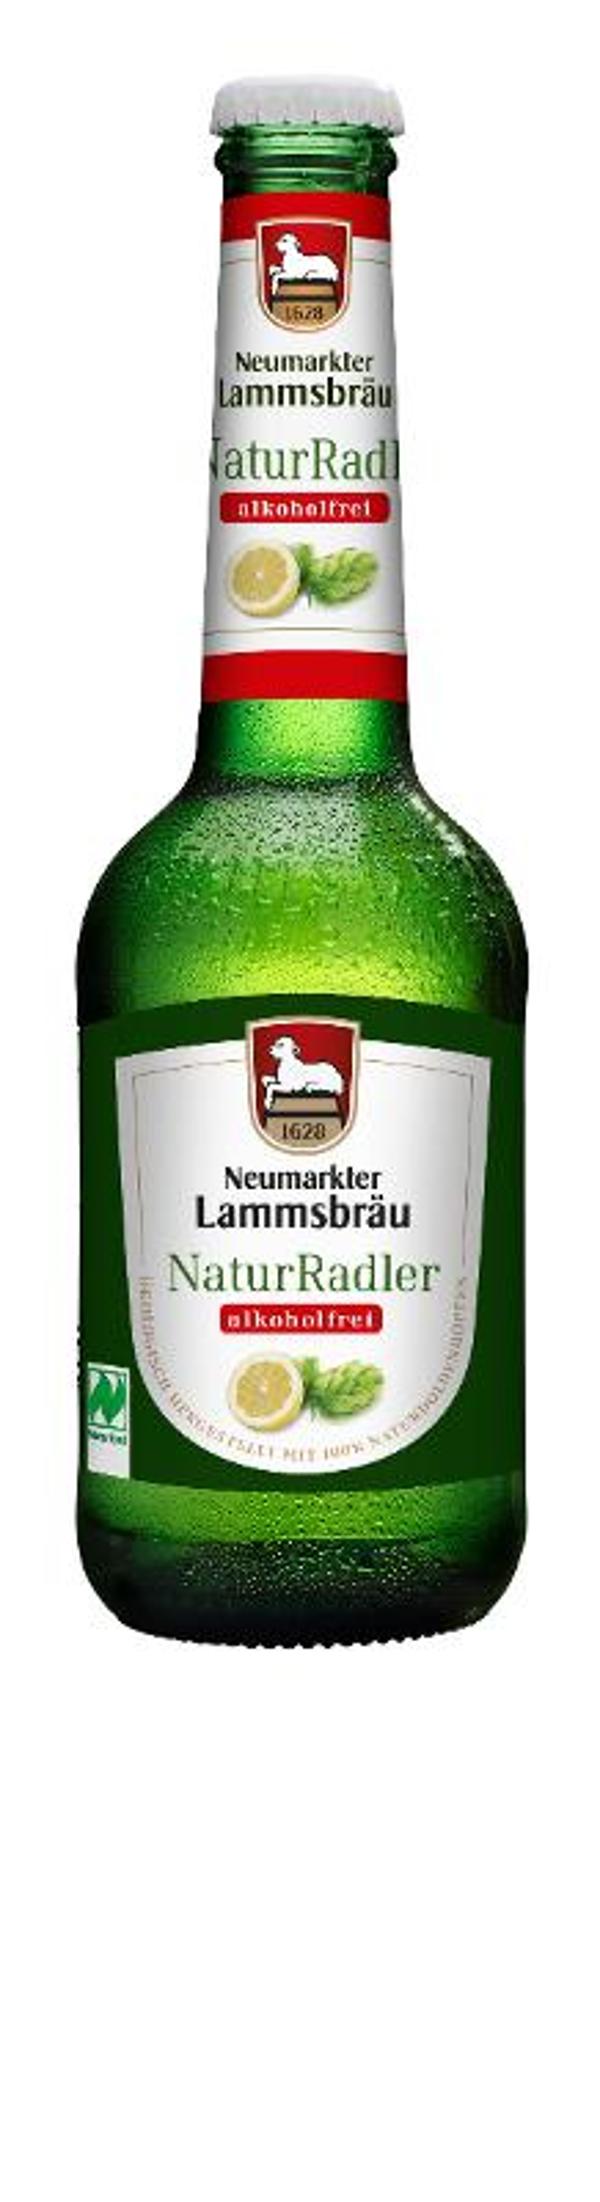 Produktfoto zu Naturradler alkoholfrei 0,33l Neumarkter Lammsbräu